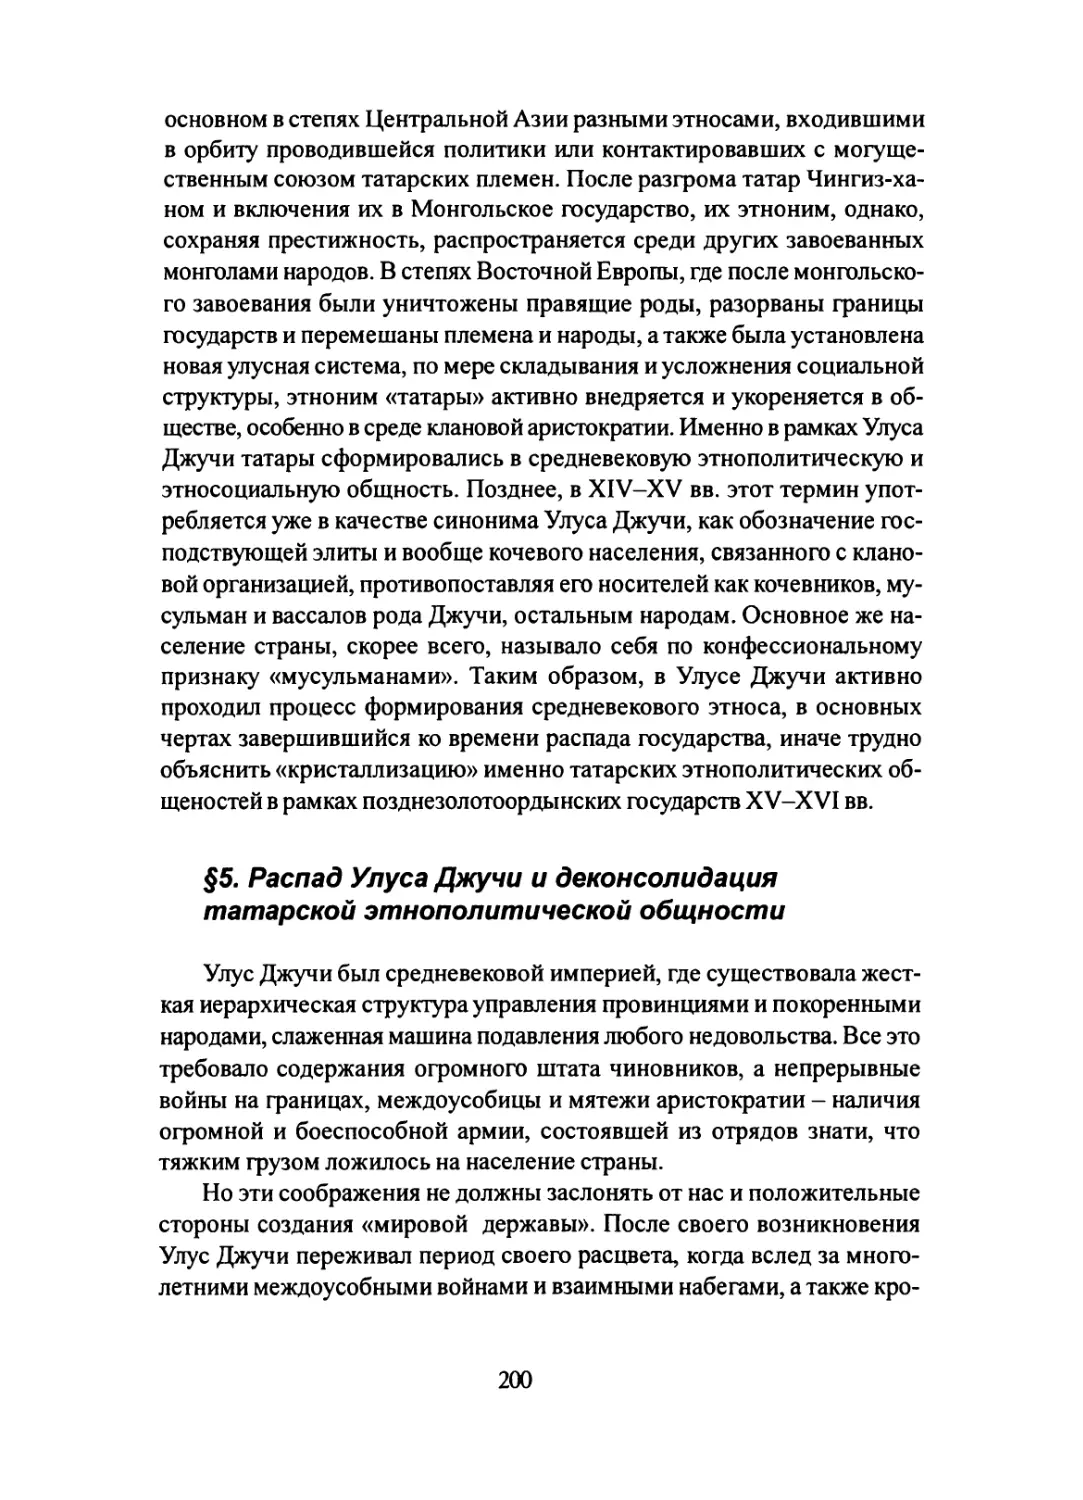 §5. Распад Улуса Джучи и деконсолдиация татарской этнополитической общности